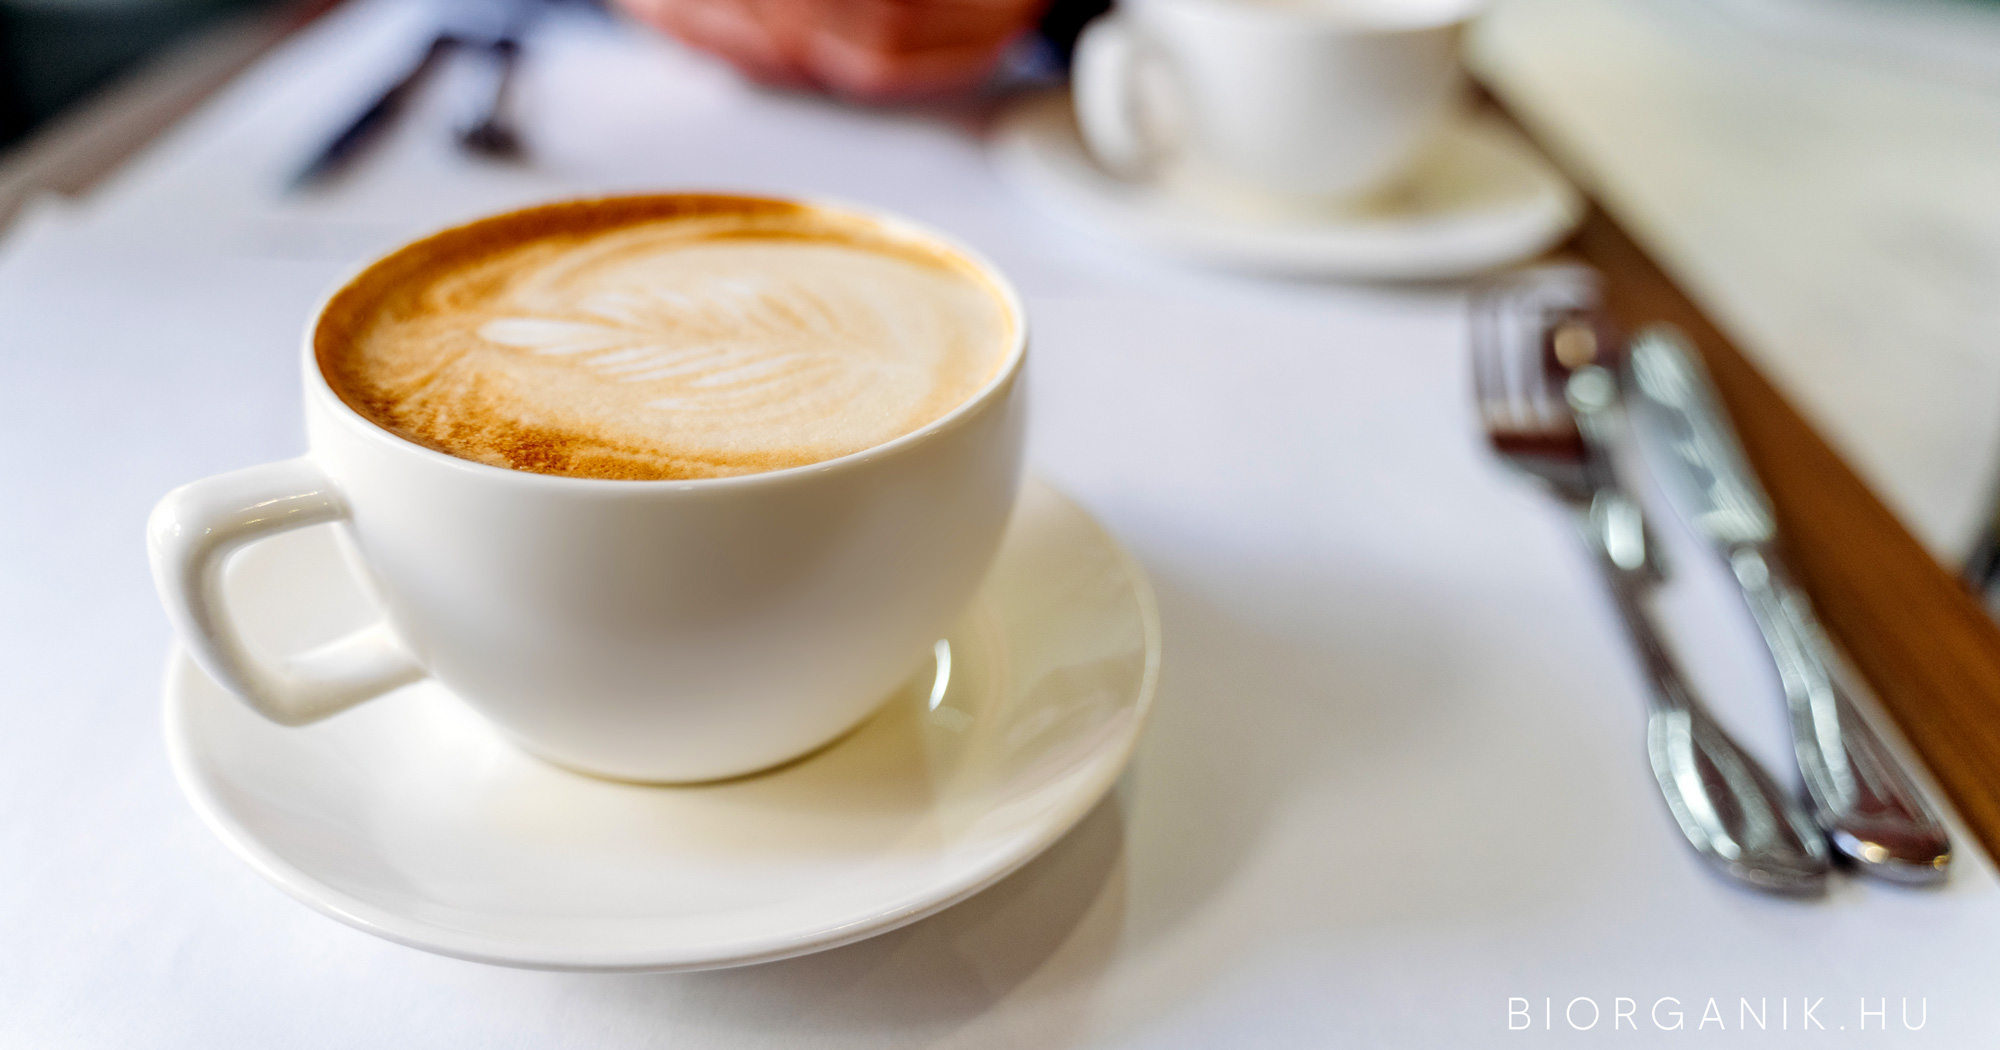 Kerüld a tea- (pl. fekete tea) és a kávéfogyasztást közvetlenül étkezések előtt és után!